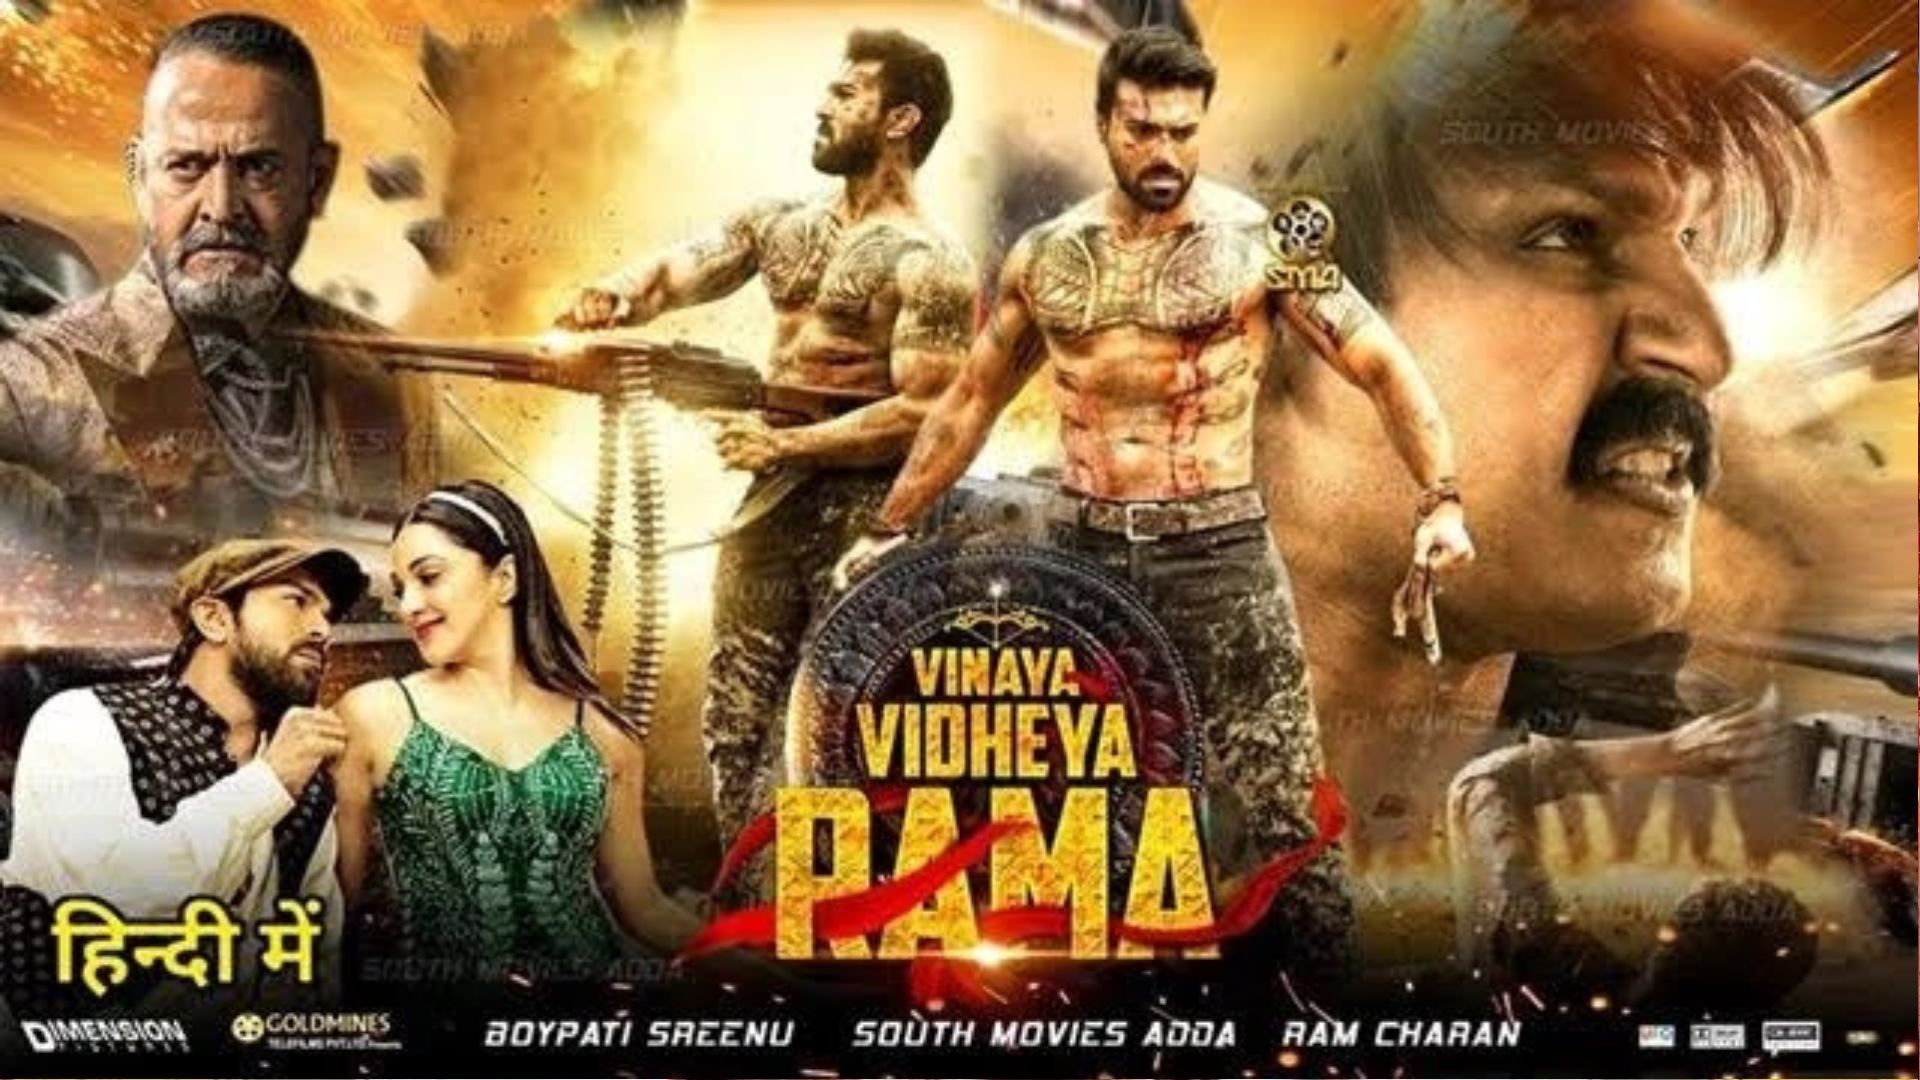 Vinaya vidheya rama movie in hindi